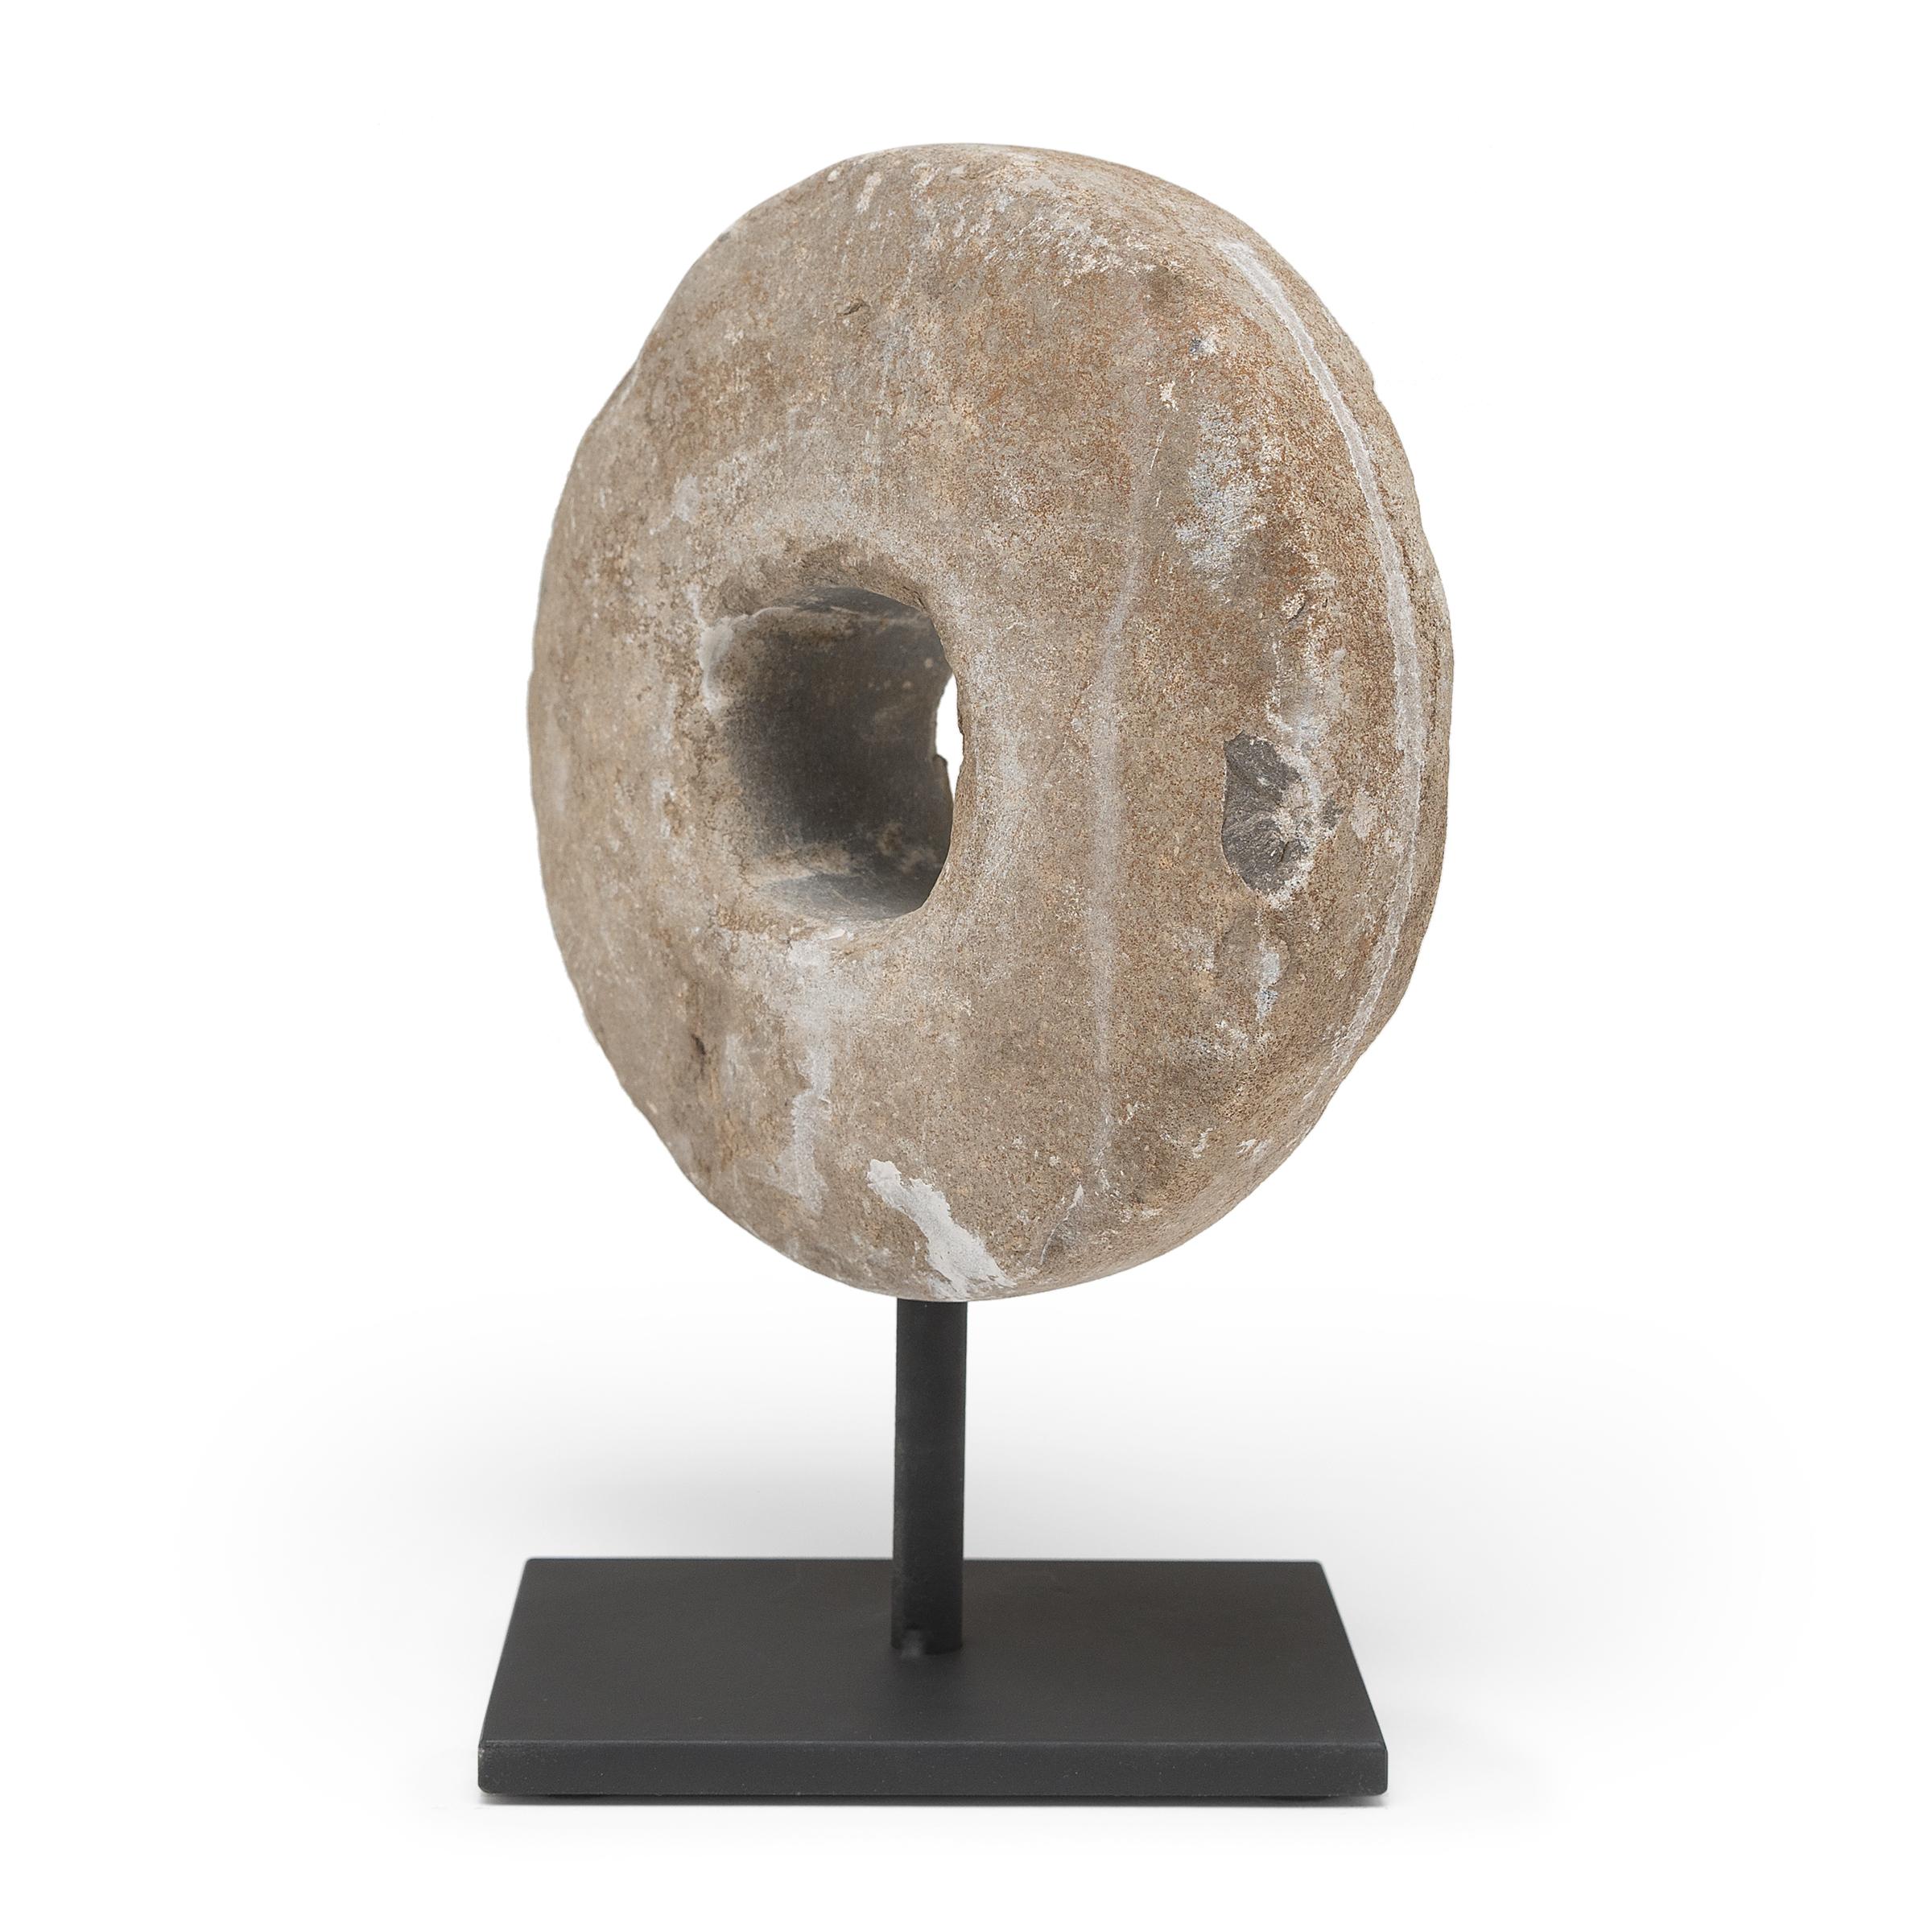 Diese runde Steinscheibe war ursprünglich eine Dreschscheibe aus dem frühen 20. Jahrhundert. Befestigt an einer hölzernen Achse, die durch die Mitte verlief, wurde der Stein über die Weizenhalme gerollt, um die Körner zu trennen, entweder von einem